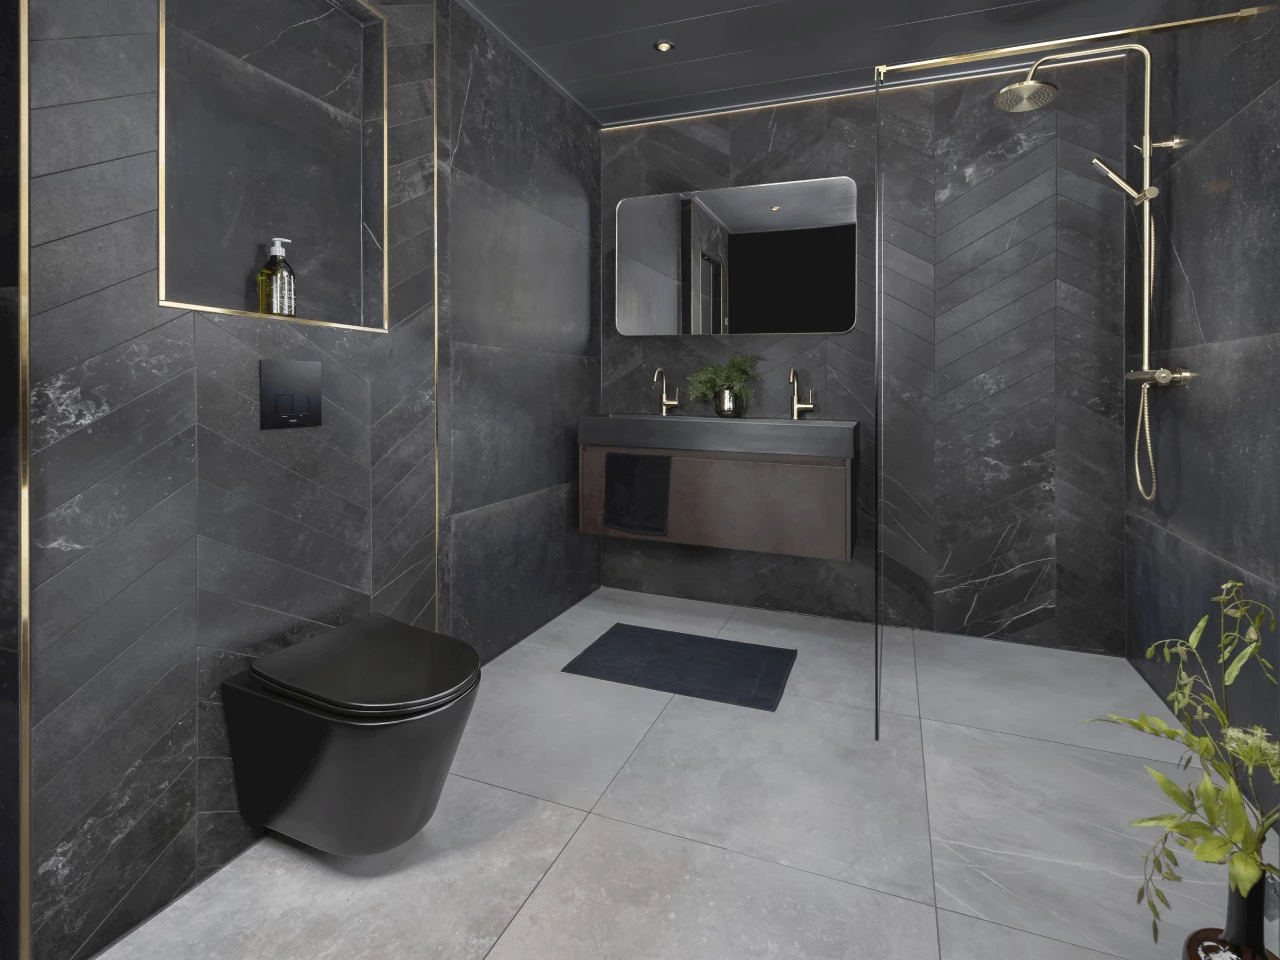 Is een luxe badkamer jouw droom?